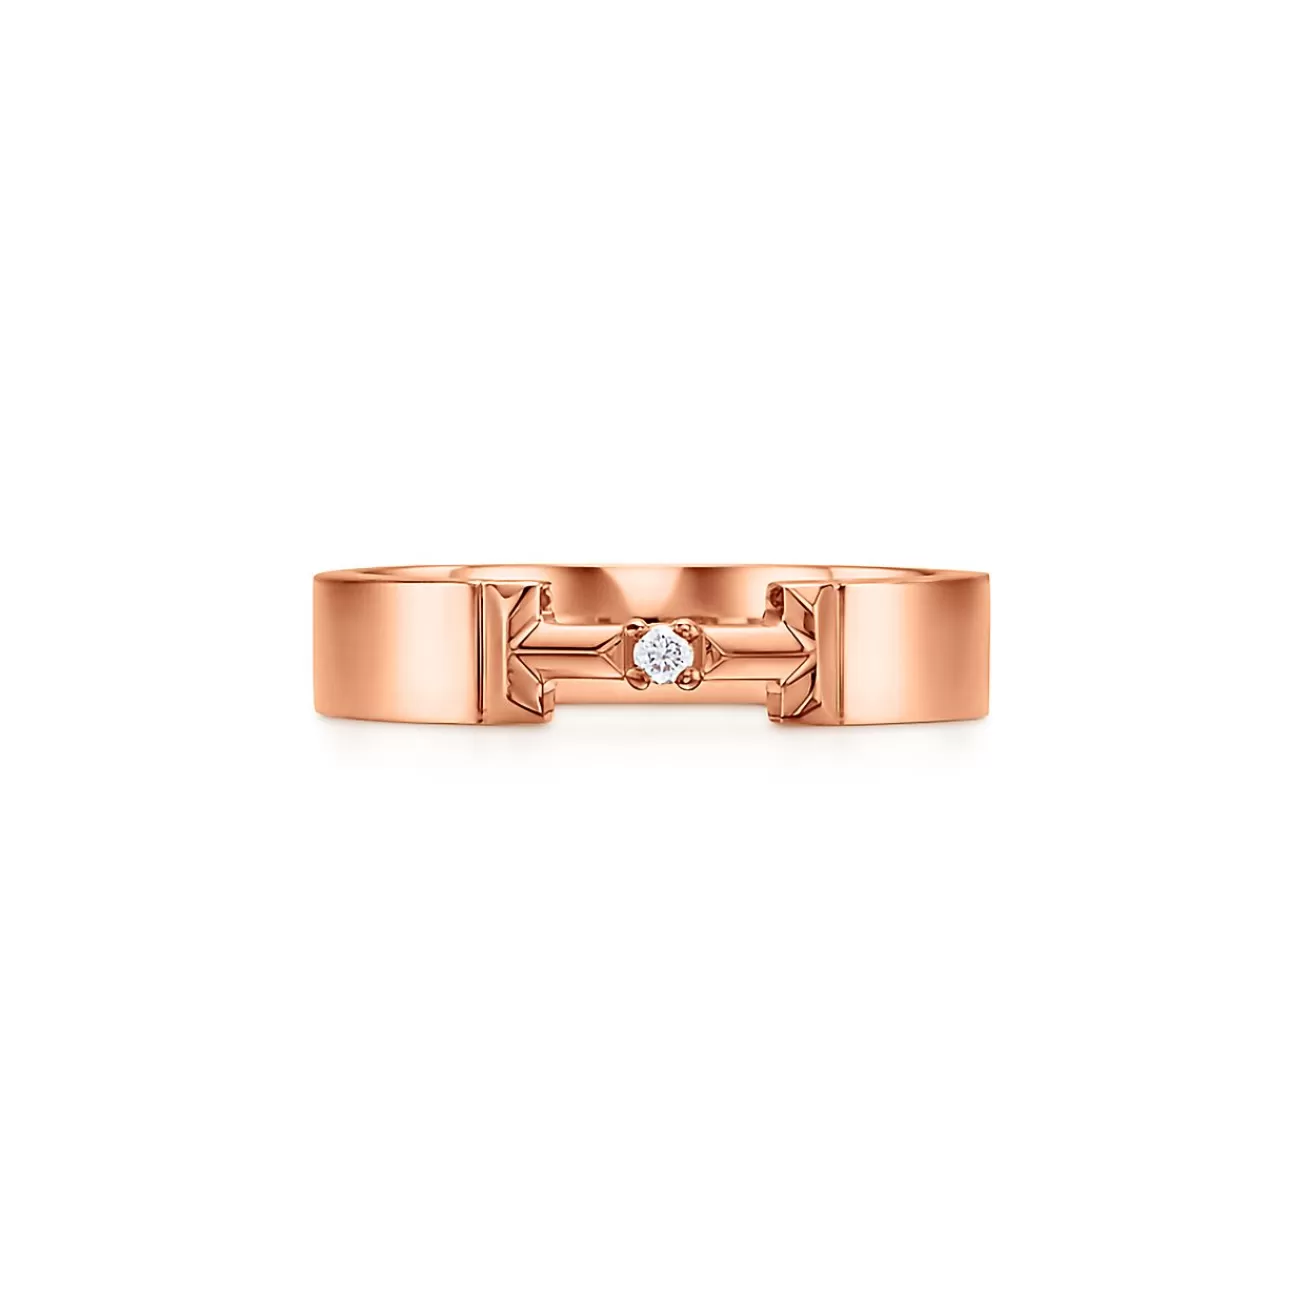 Tiffany & Co. Tiffany T True diamond link ring in 18k rose gold, 4 mm wide. | ^ Rings | Men's Jewelry